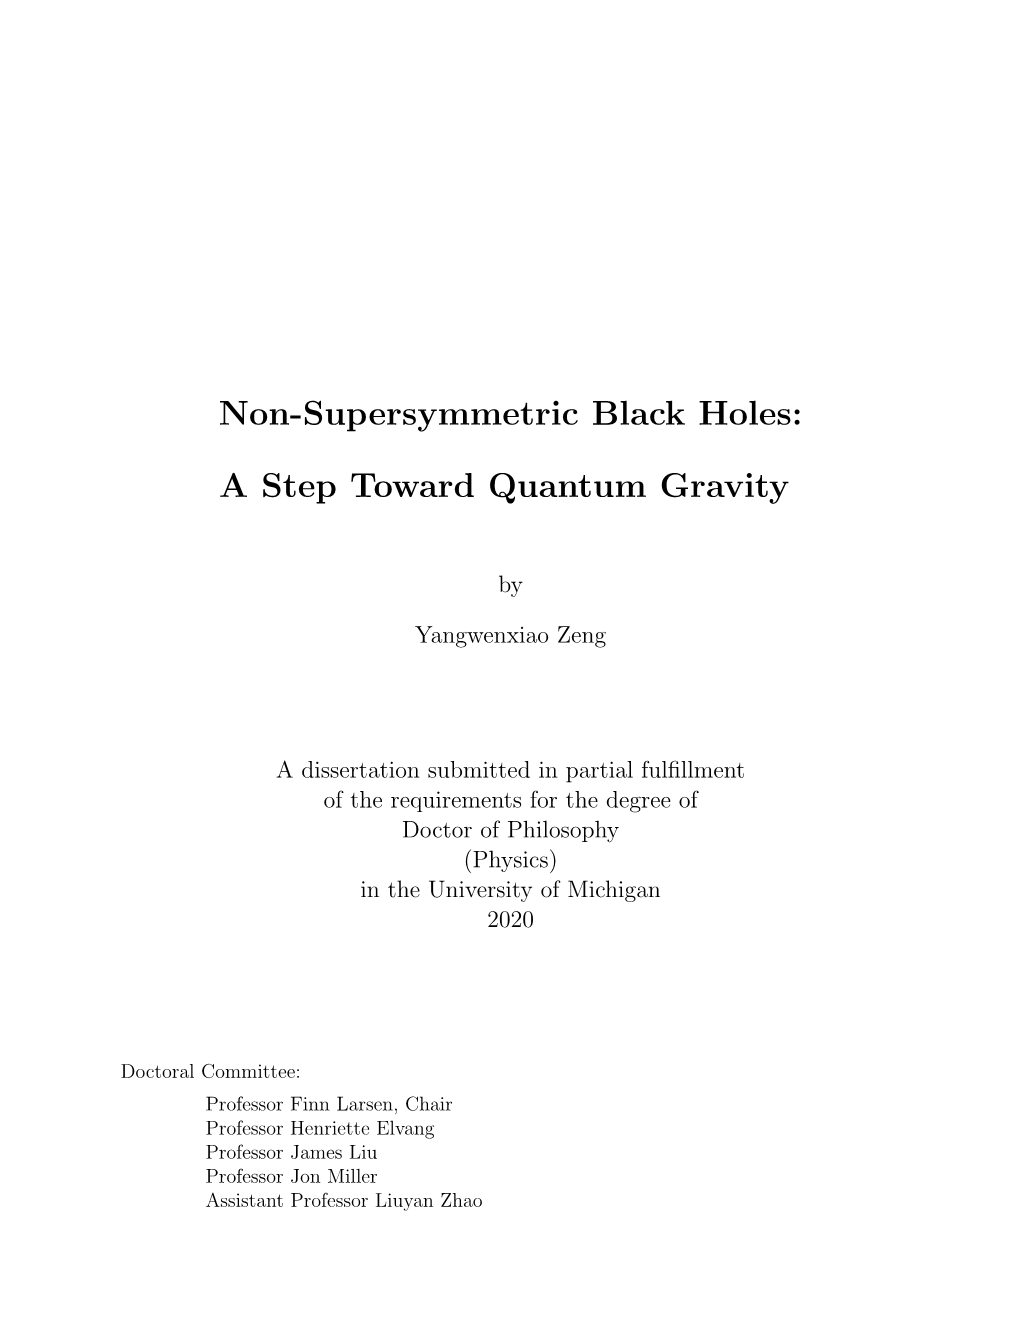 Non-Supersymmetric Black Holes: a Step Toward Quantum Gravity